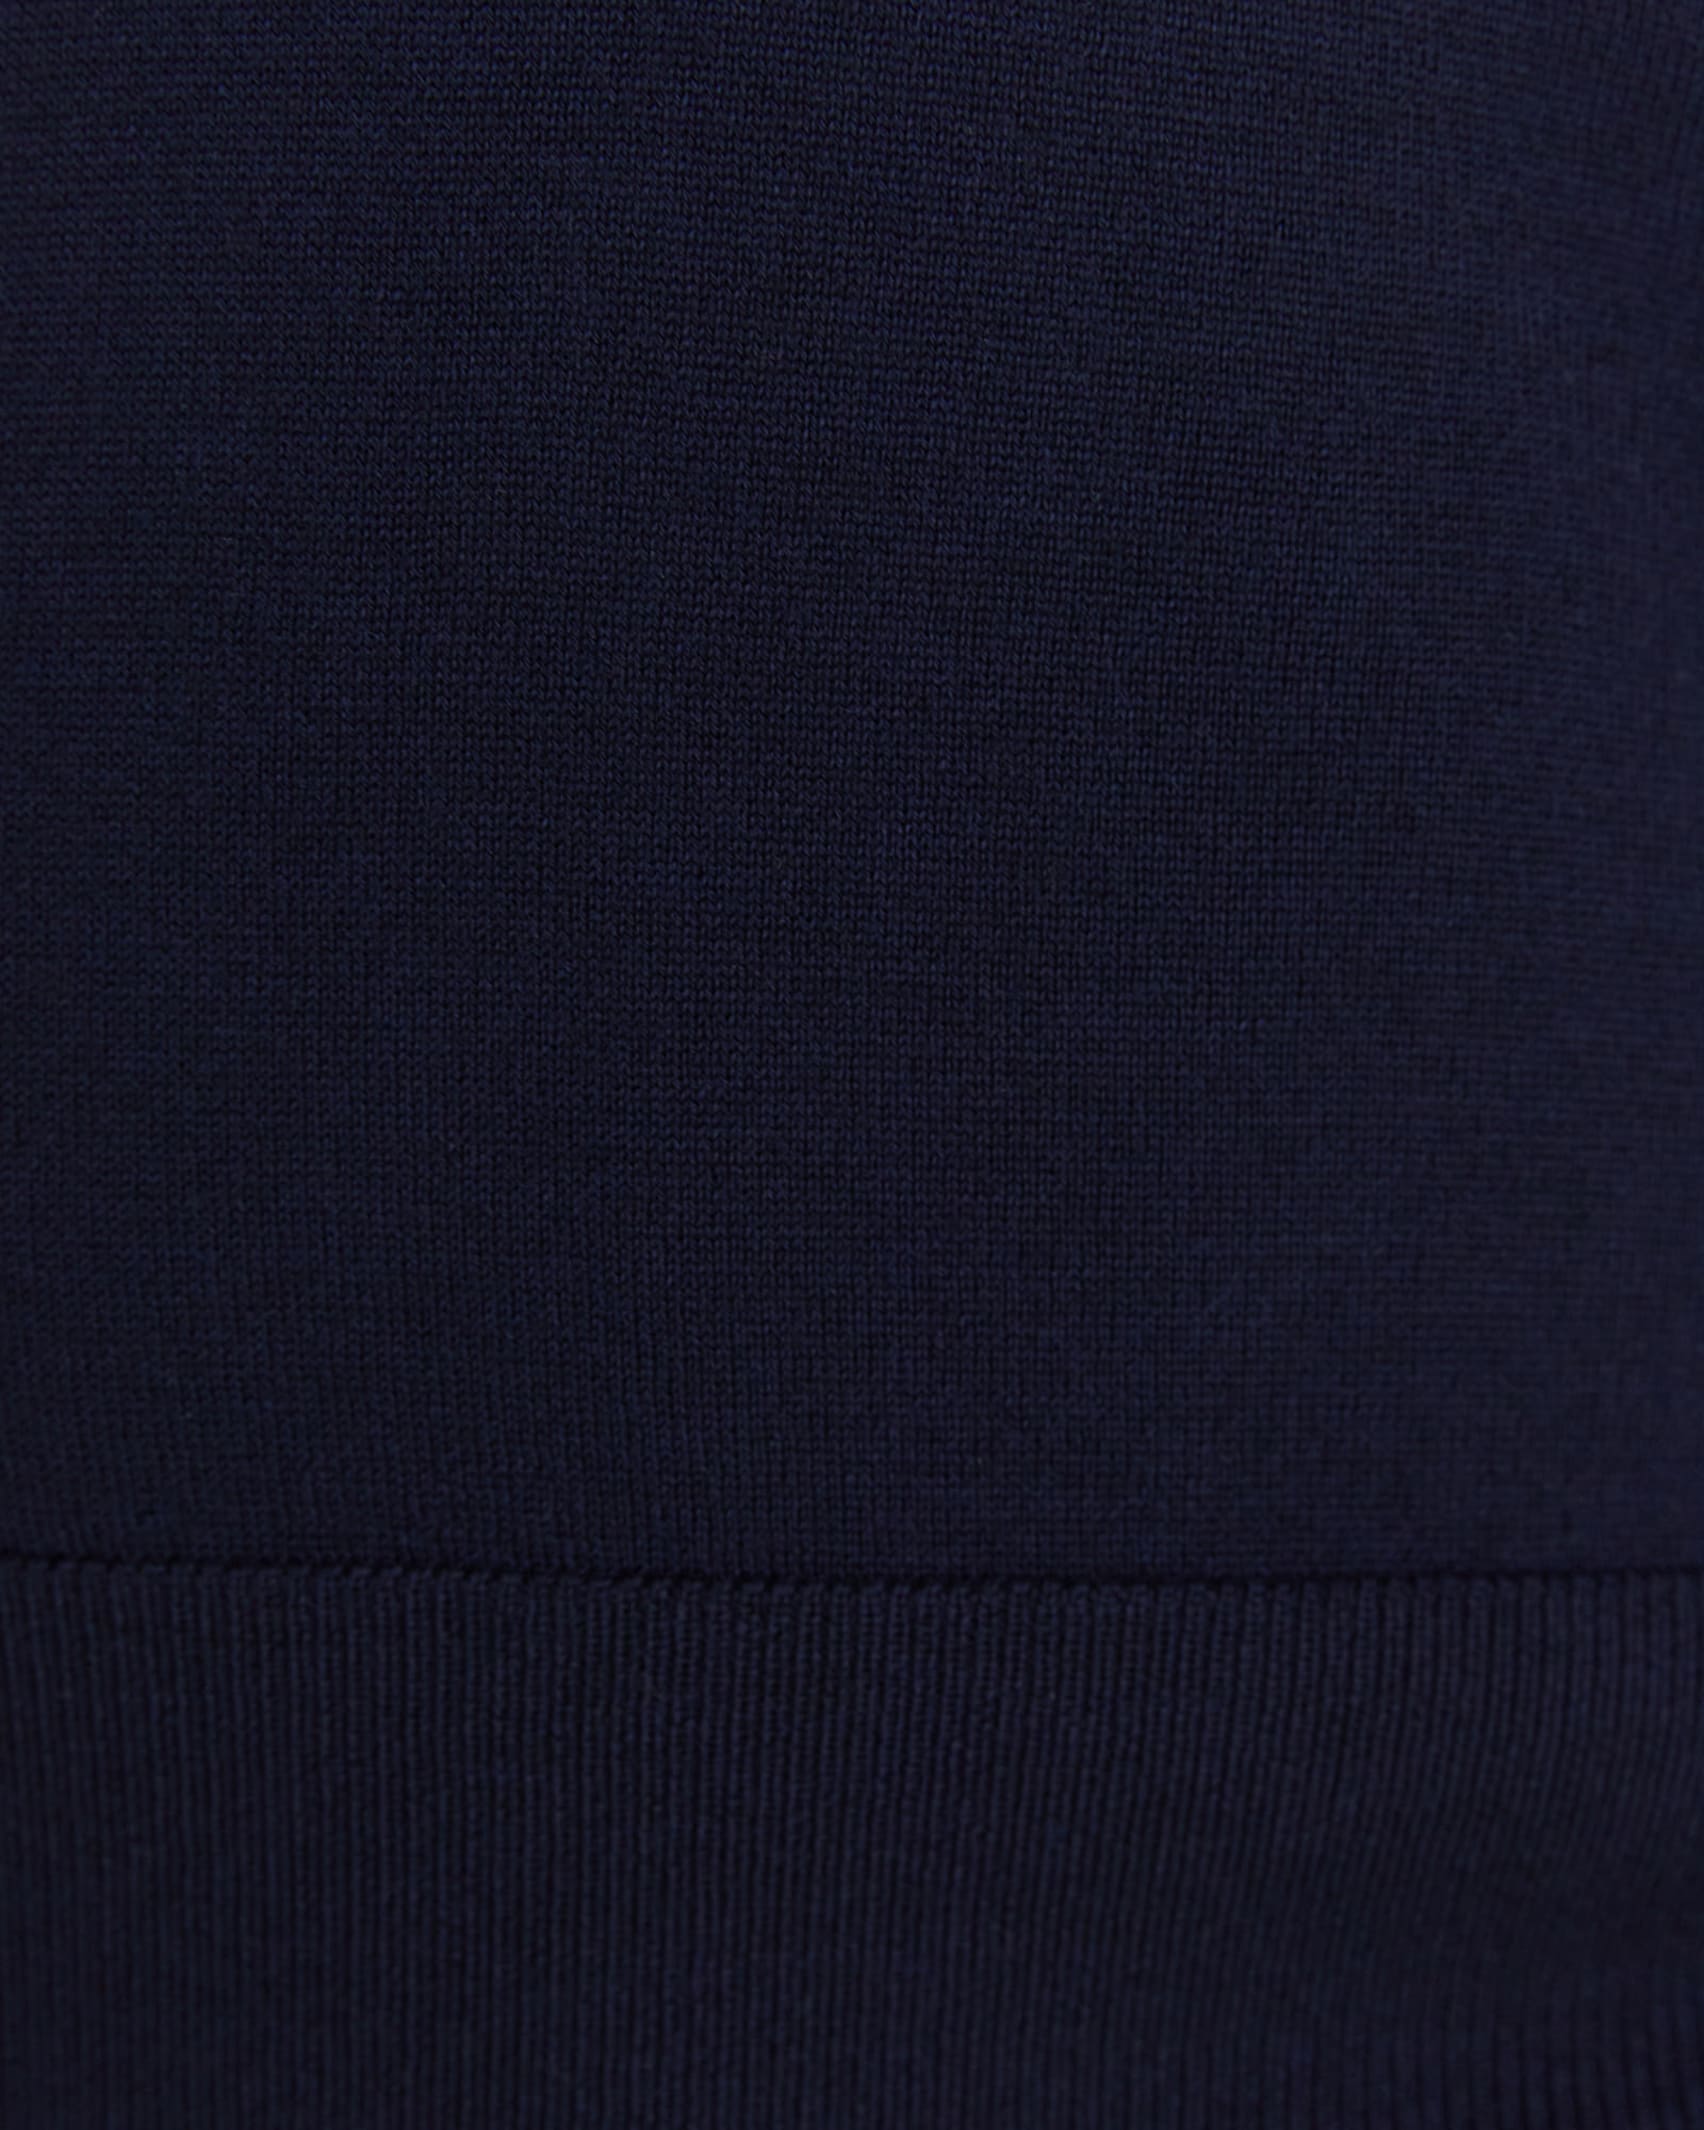 Merino Wool Long Sleeve Knit in NAVY